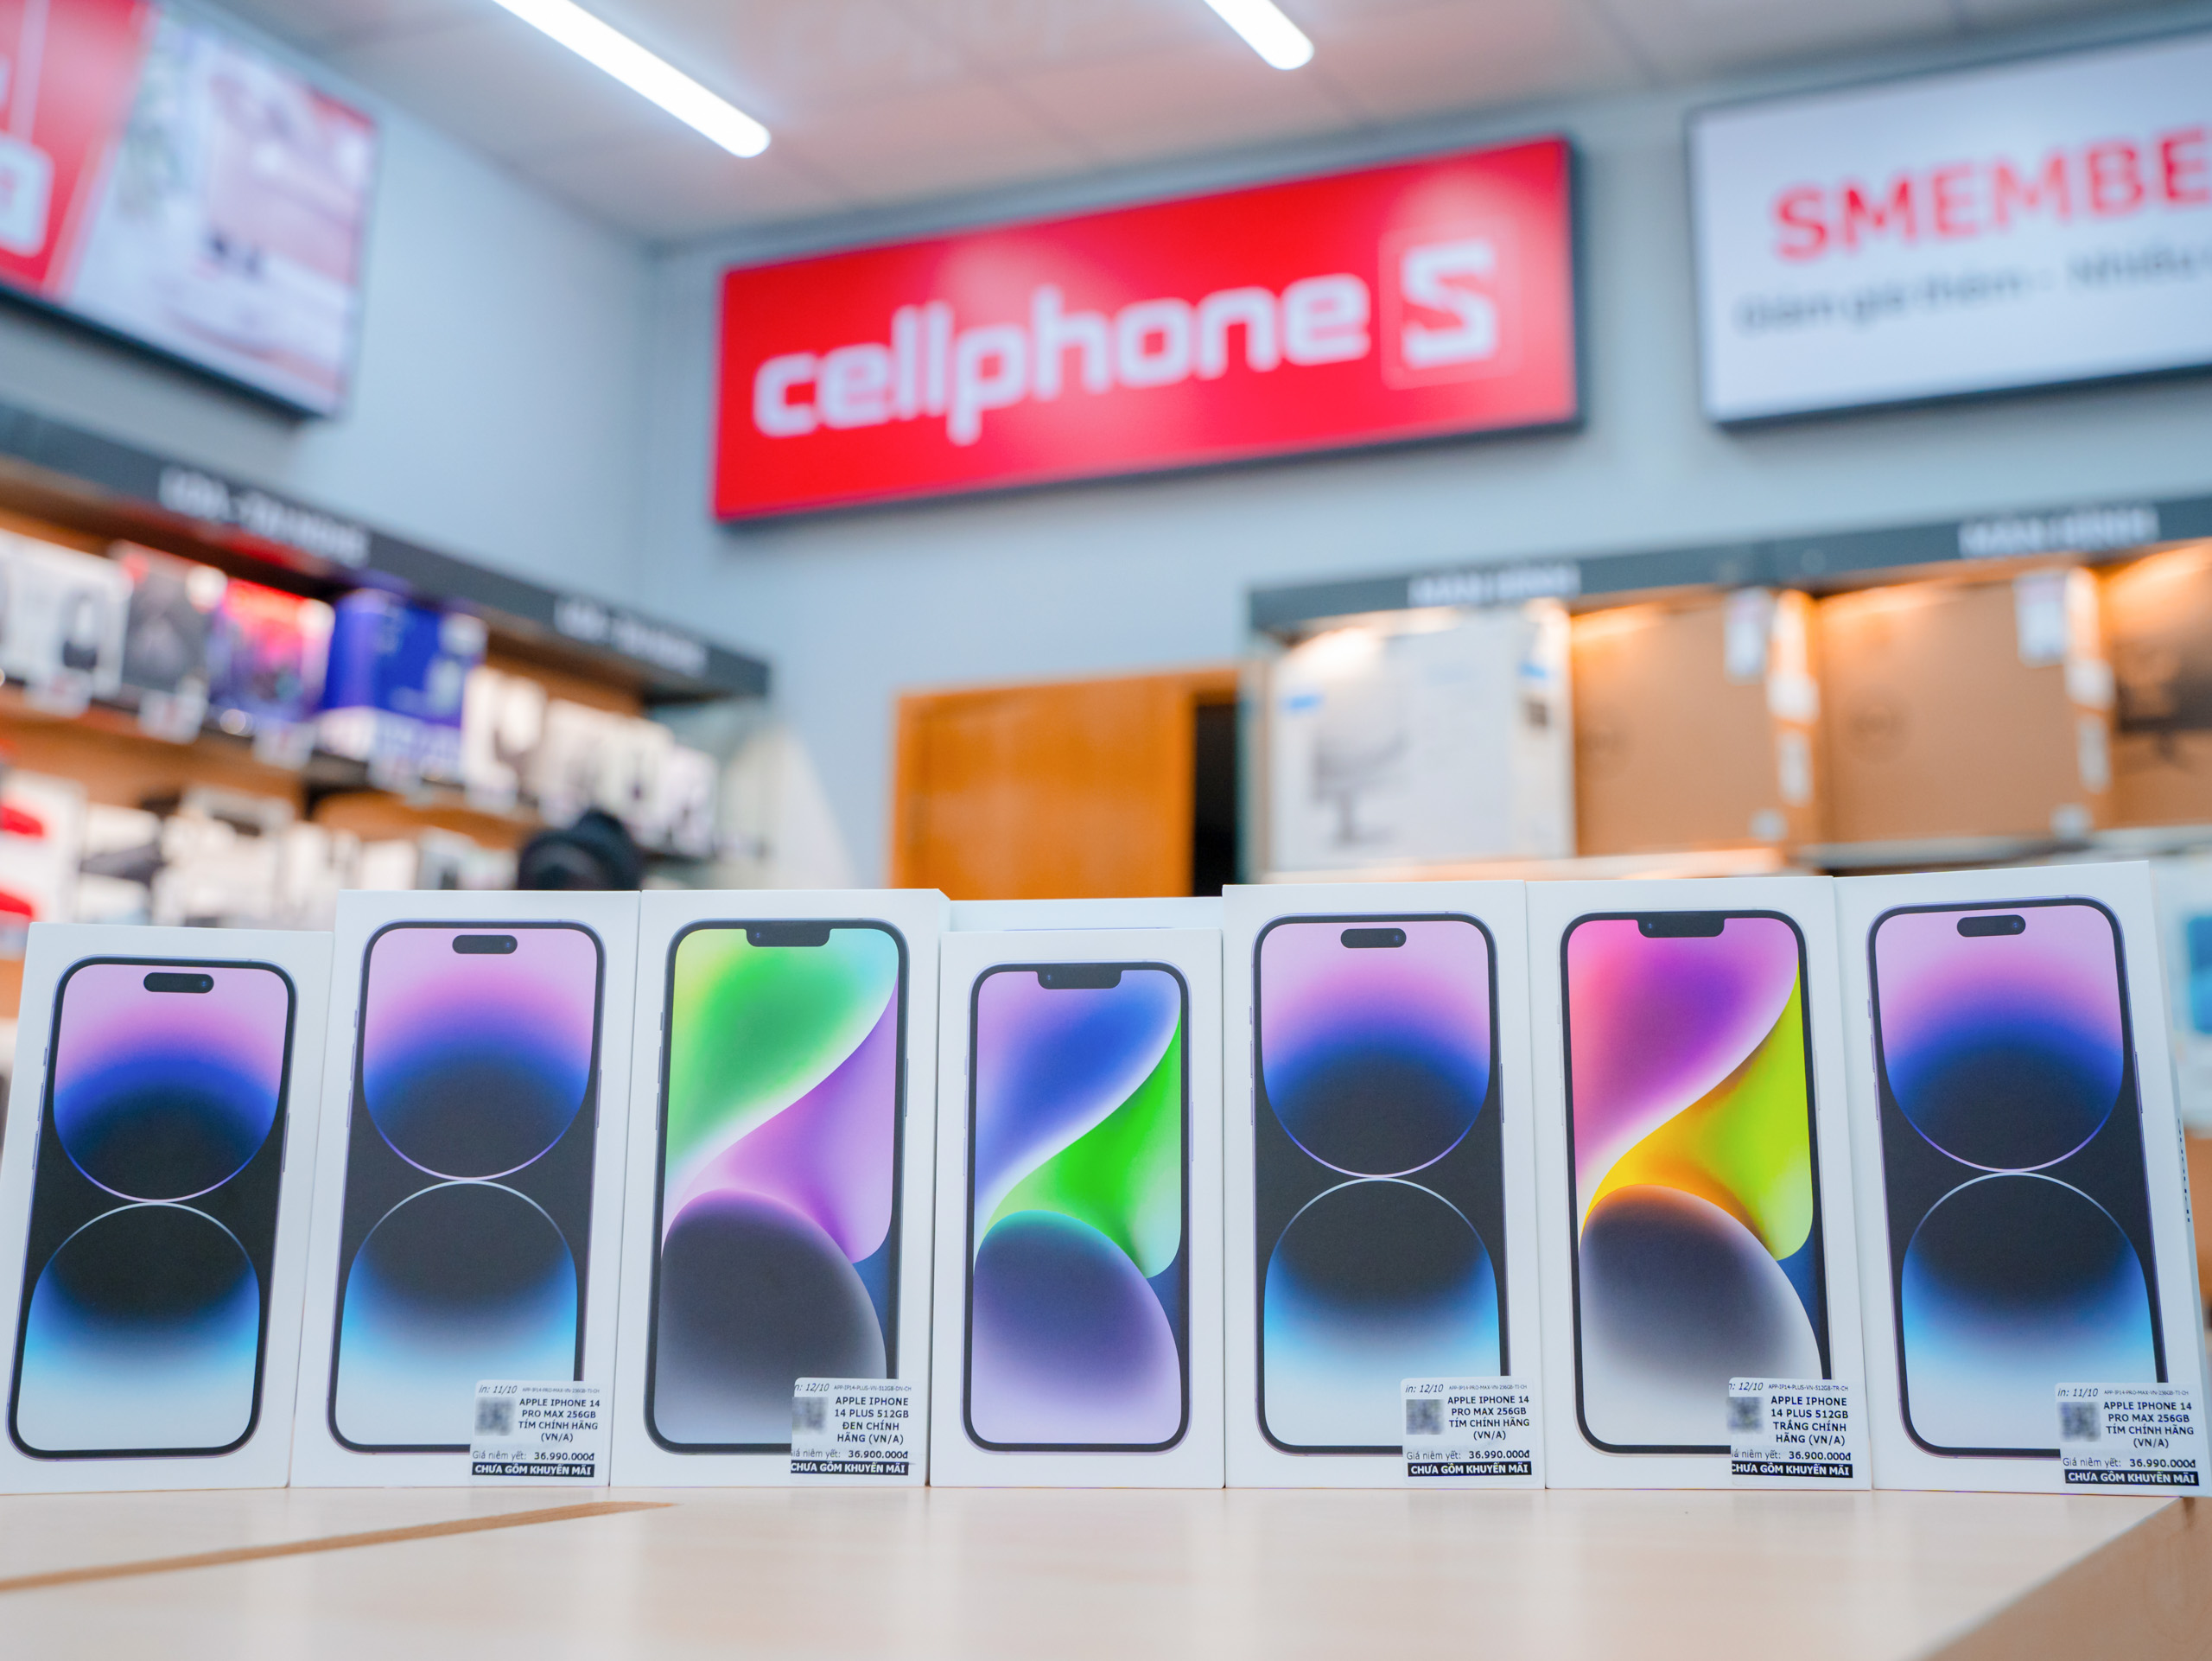 CellphoneS mở bán 15,000 khách hàng đặt trước iPhone 14 series chính hãng